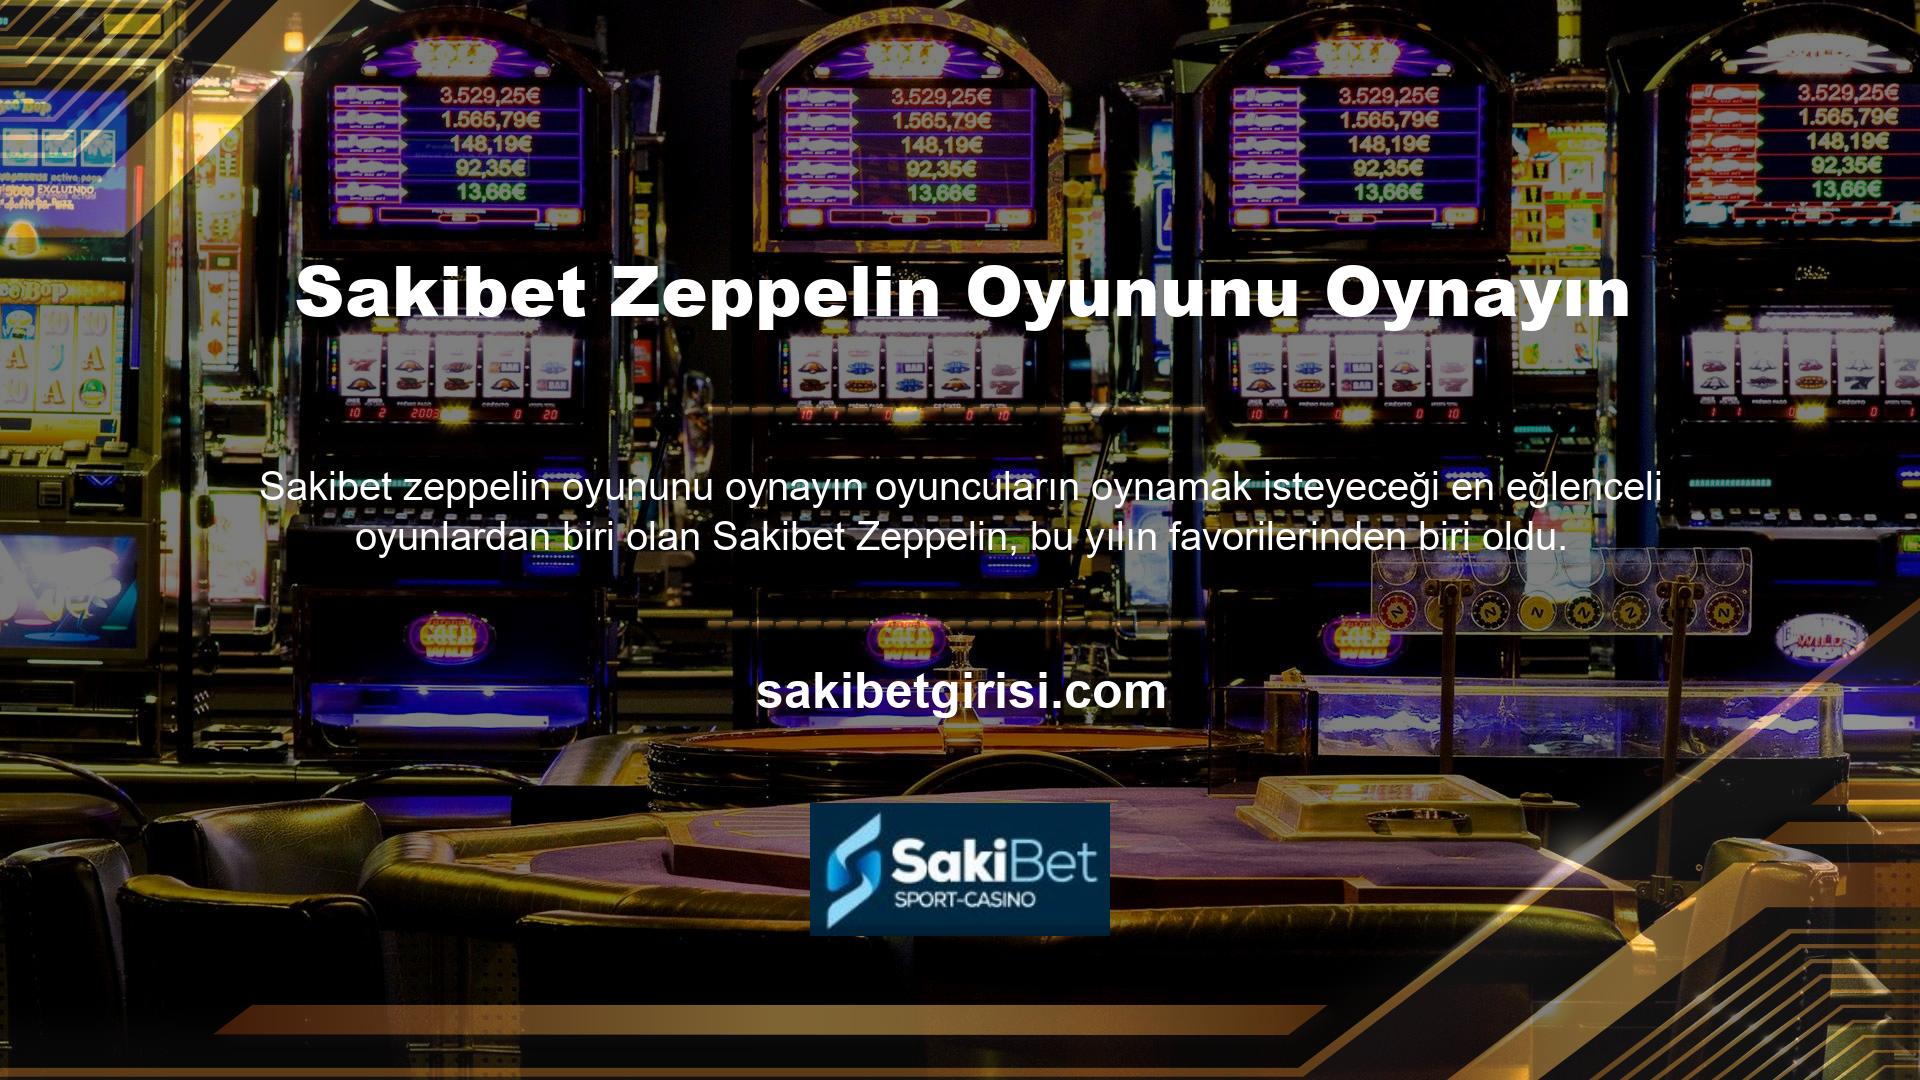 Türkçe'de Zeplin olarak da bilinen Zeplin oyunu, poker ve casino oyunlarında yerini güvence altına almak isteyen oyuncular için en popüler oyunlardan biridir